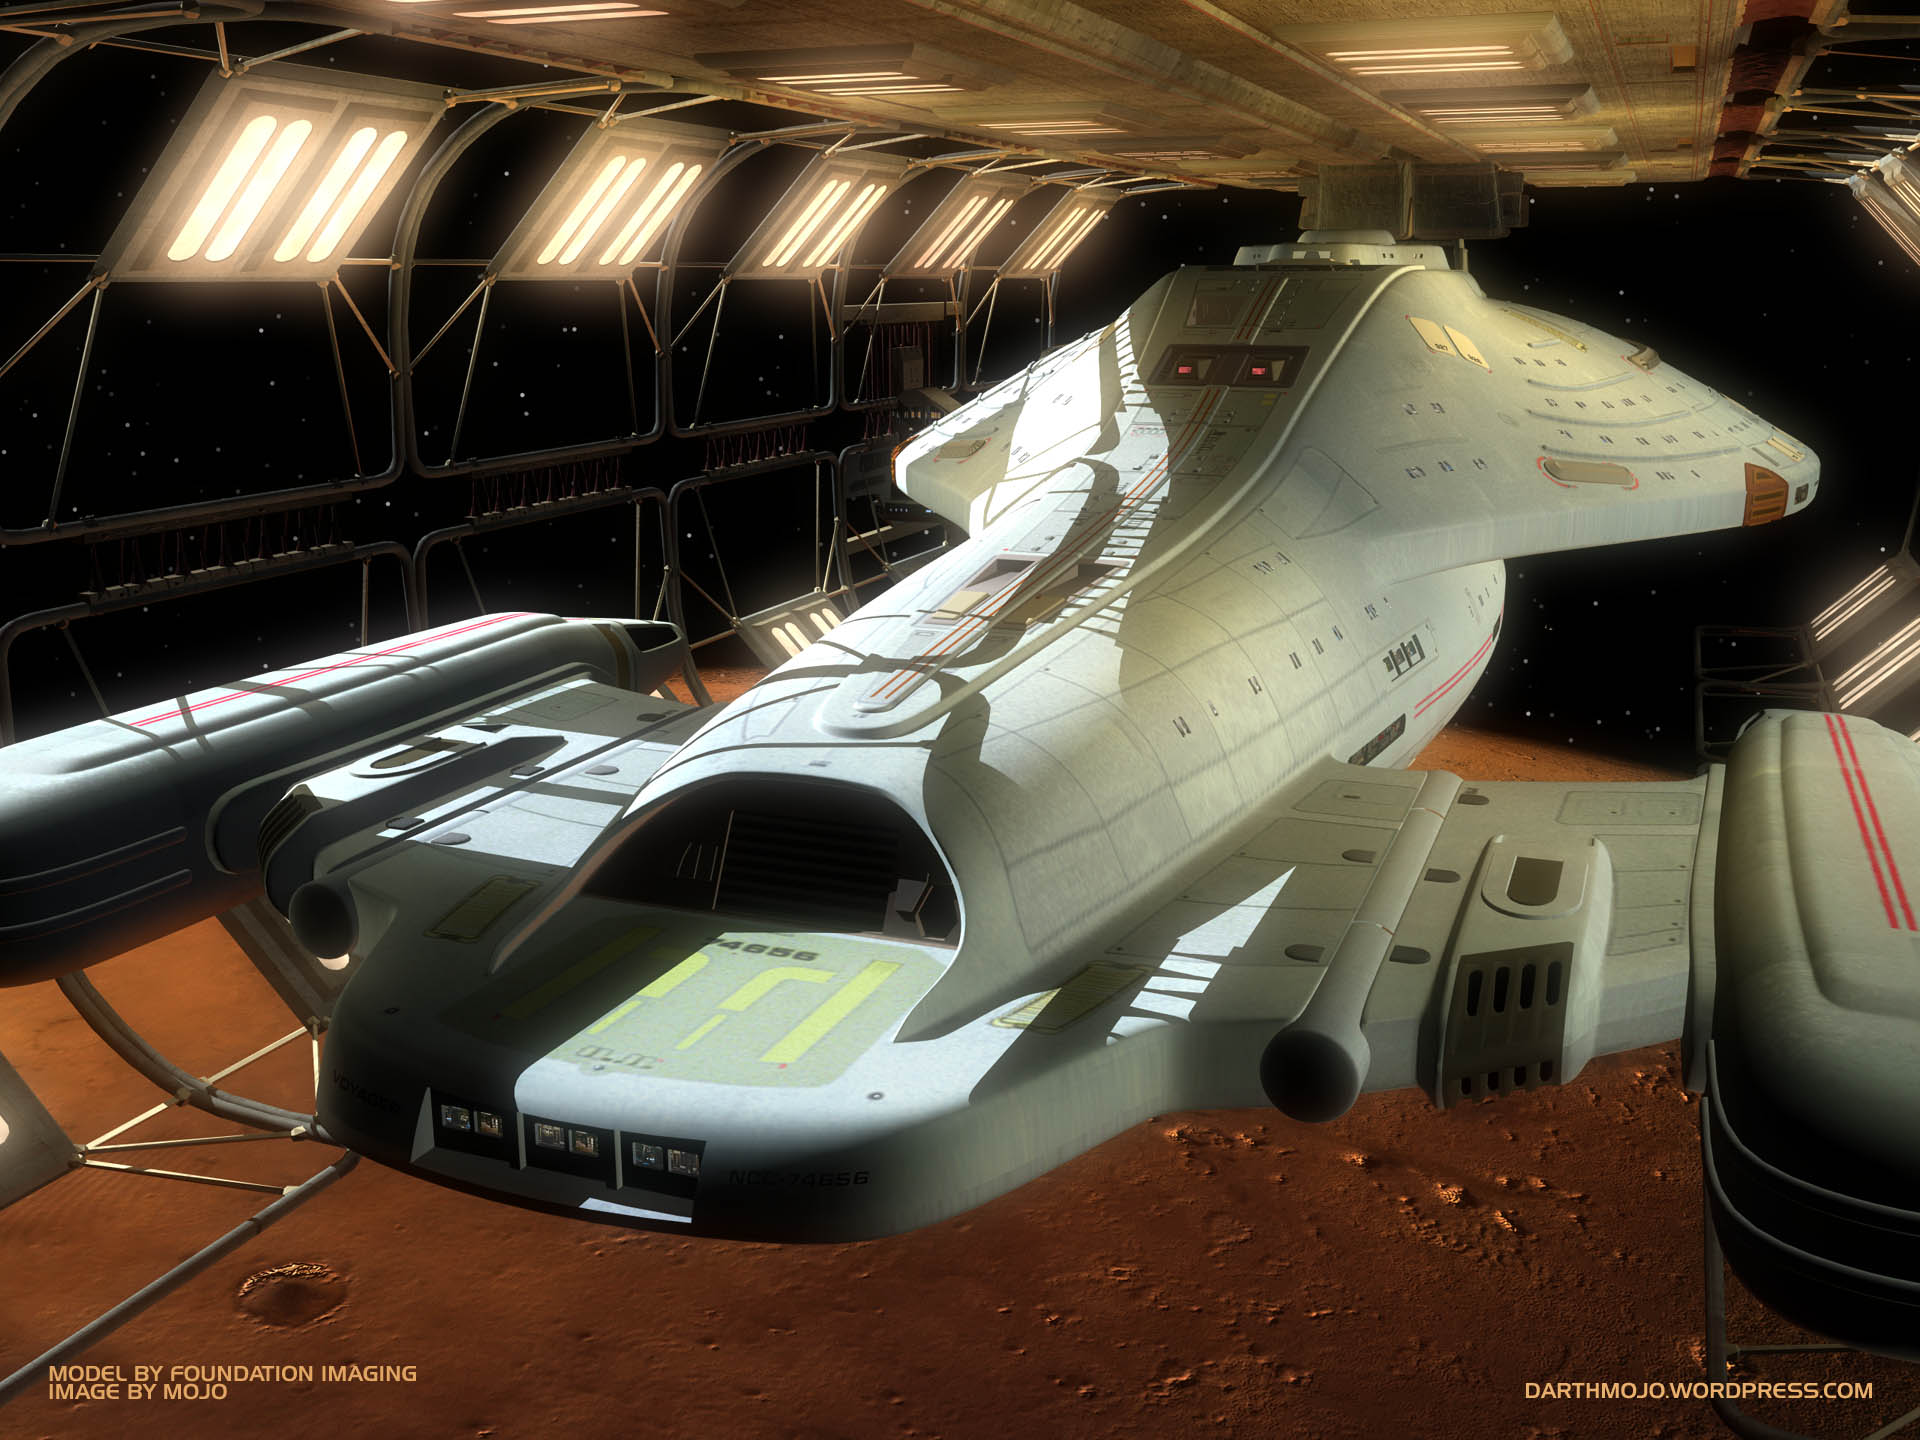 U.S.S. Voyager in der Utopia-Planitia-Werft in "Relativity" (Bild: Nutzung mit freundlicher Erlaubnis von Adam "Mojo" Lebowitz)